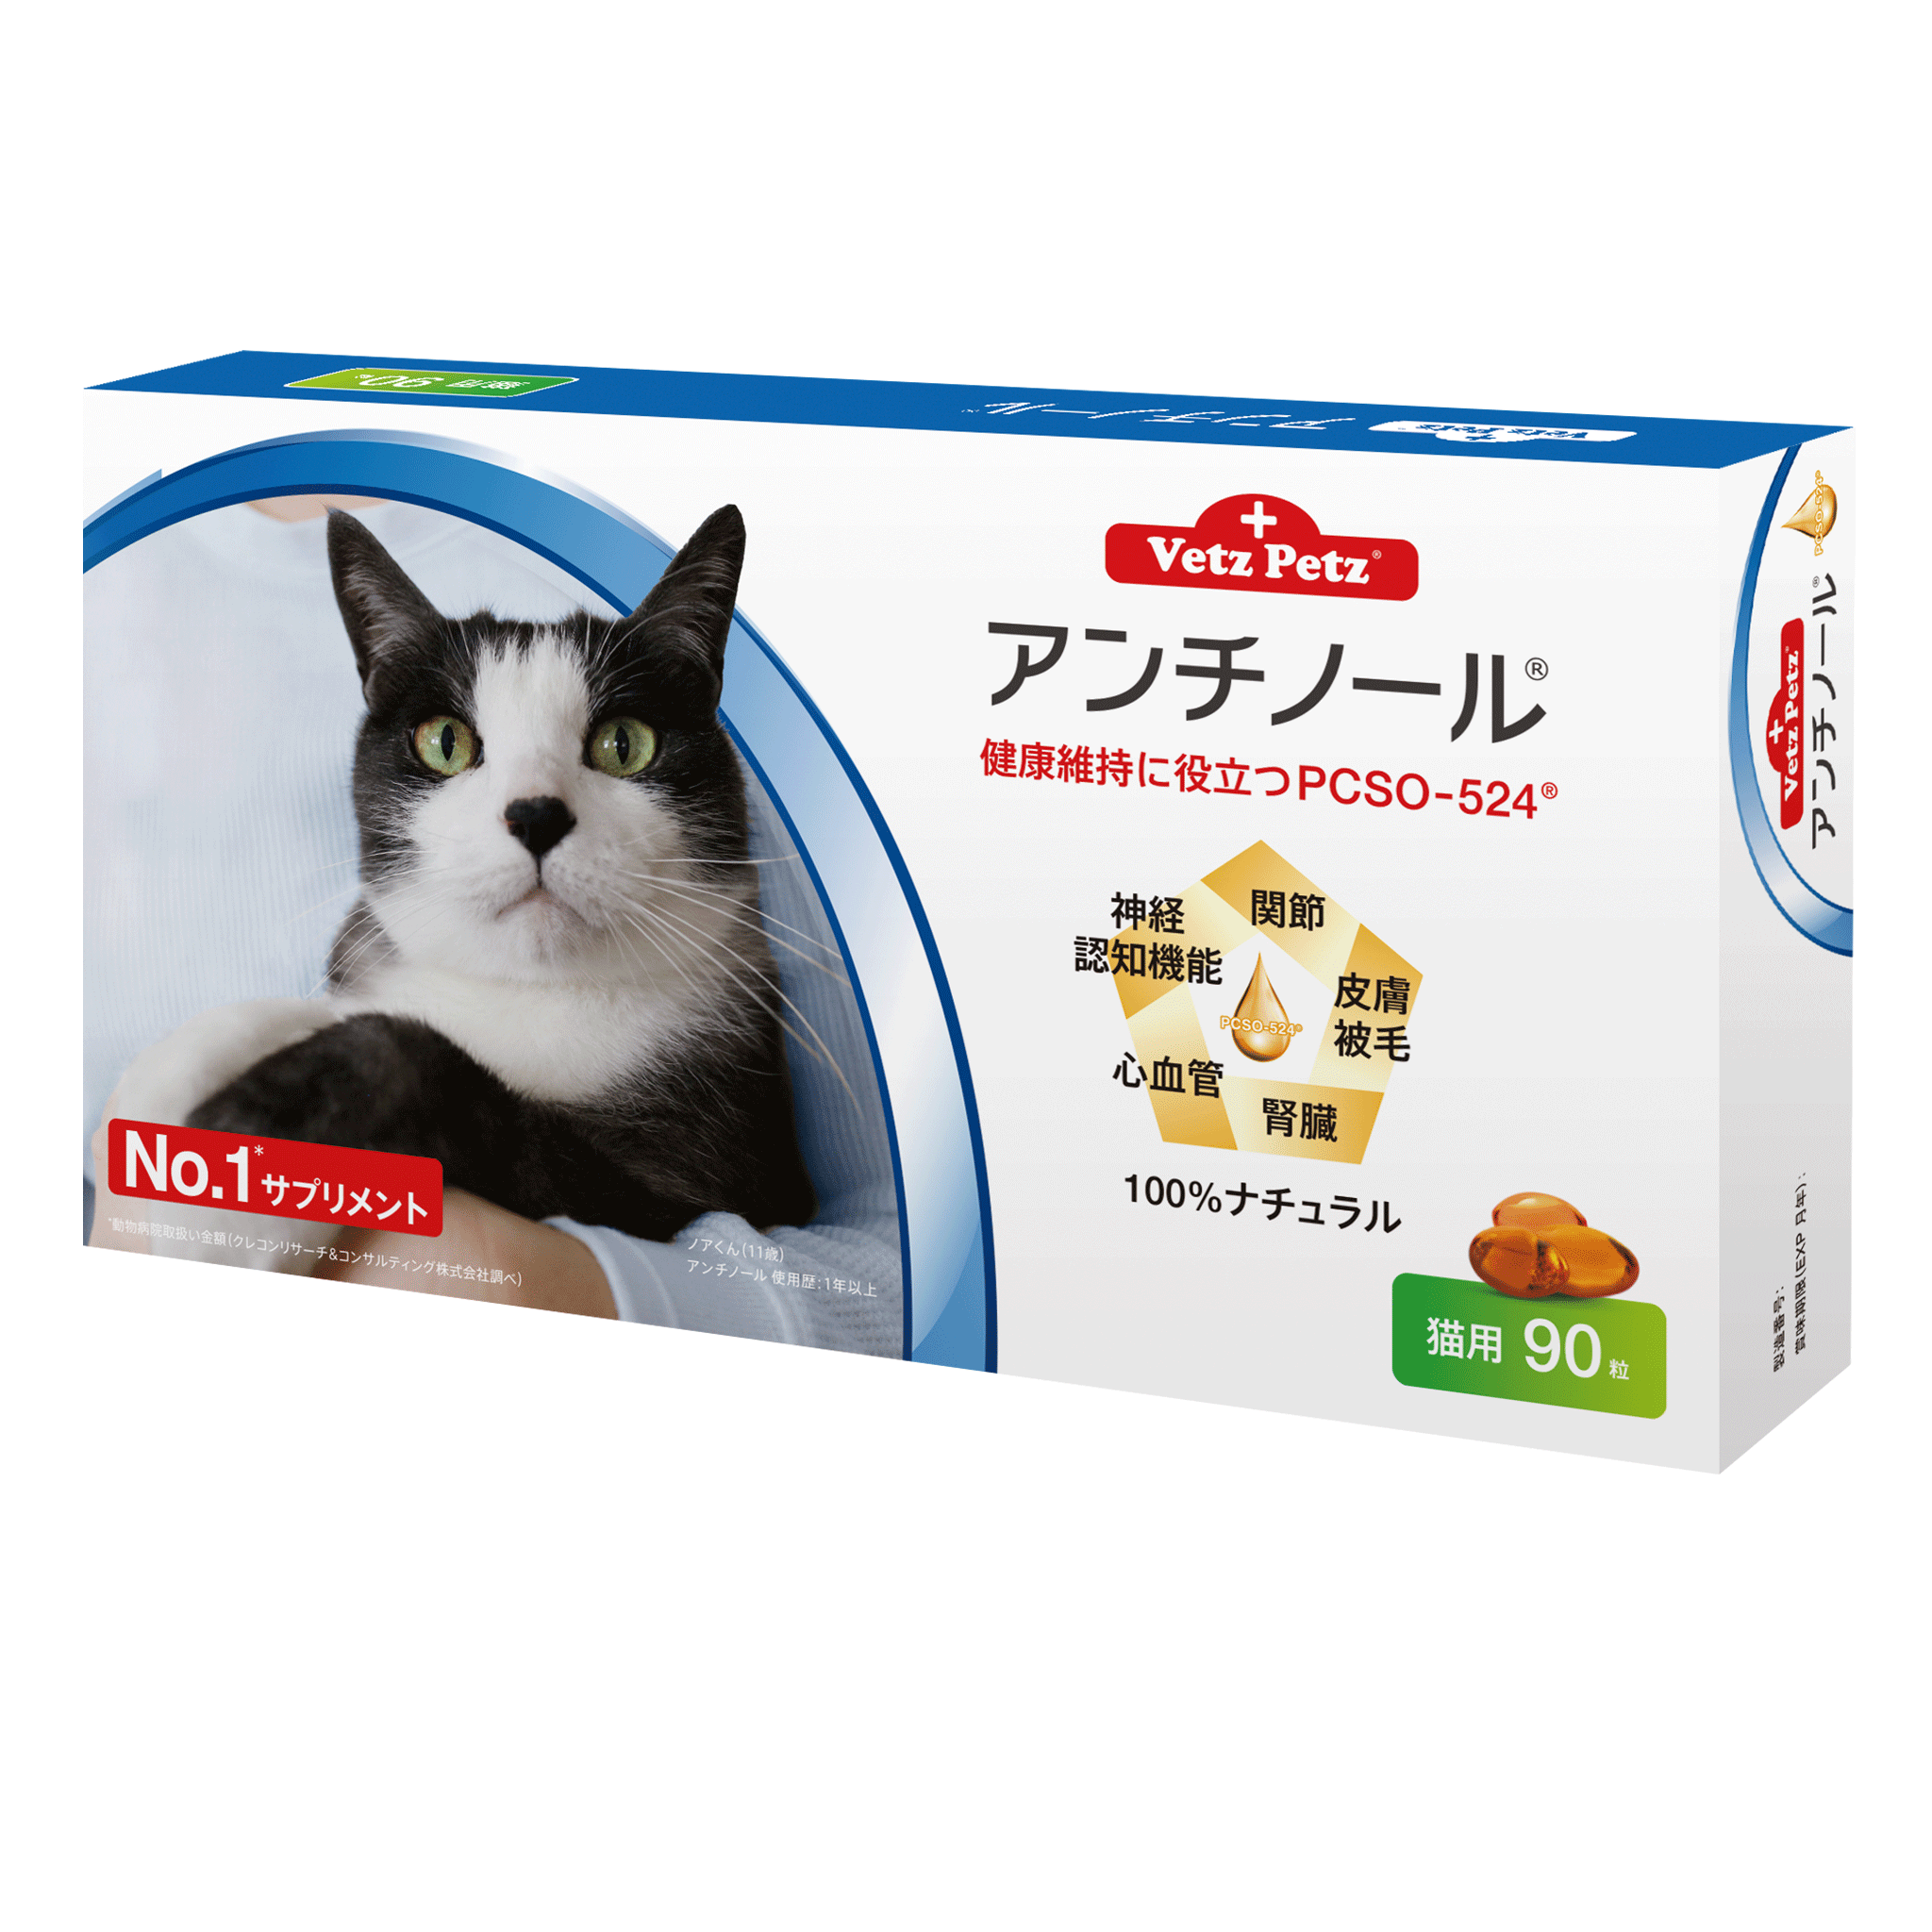 アンチノール (猫用) 動物病院取扱いNo.1サプリメント 